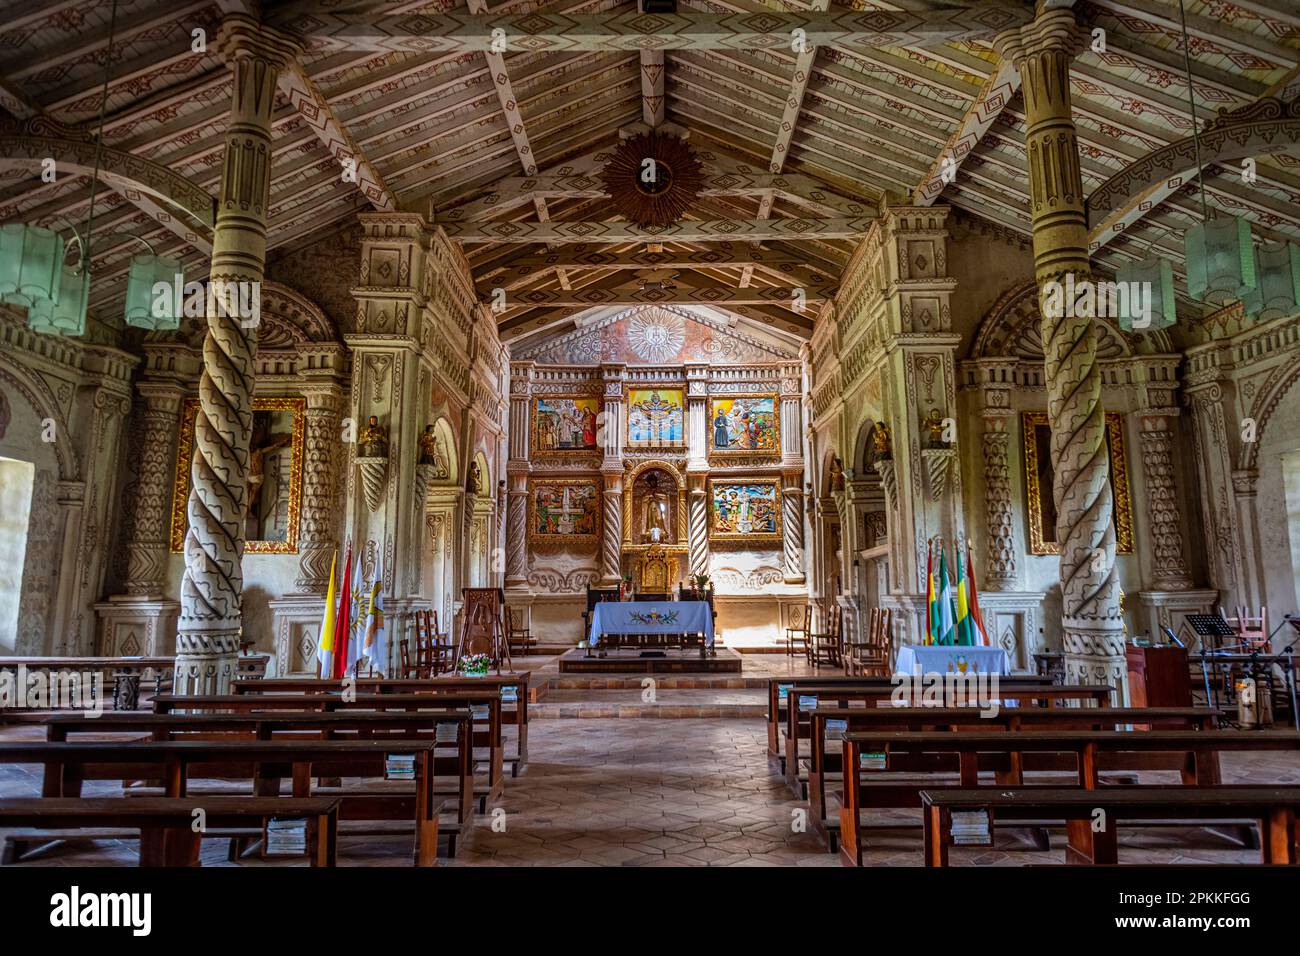 Mission San Javier peinte en couleurs, missions jésuites de Chiquitos, site du patrimoine mondial de l'UNESCO, département de Santa Cruz, Bolivie, Amérique du Sud Banque D'Images